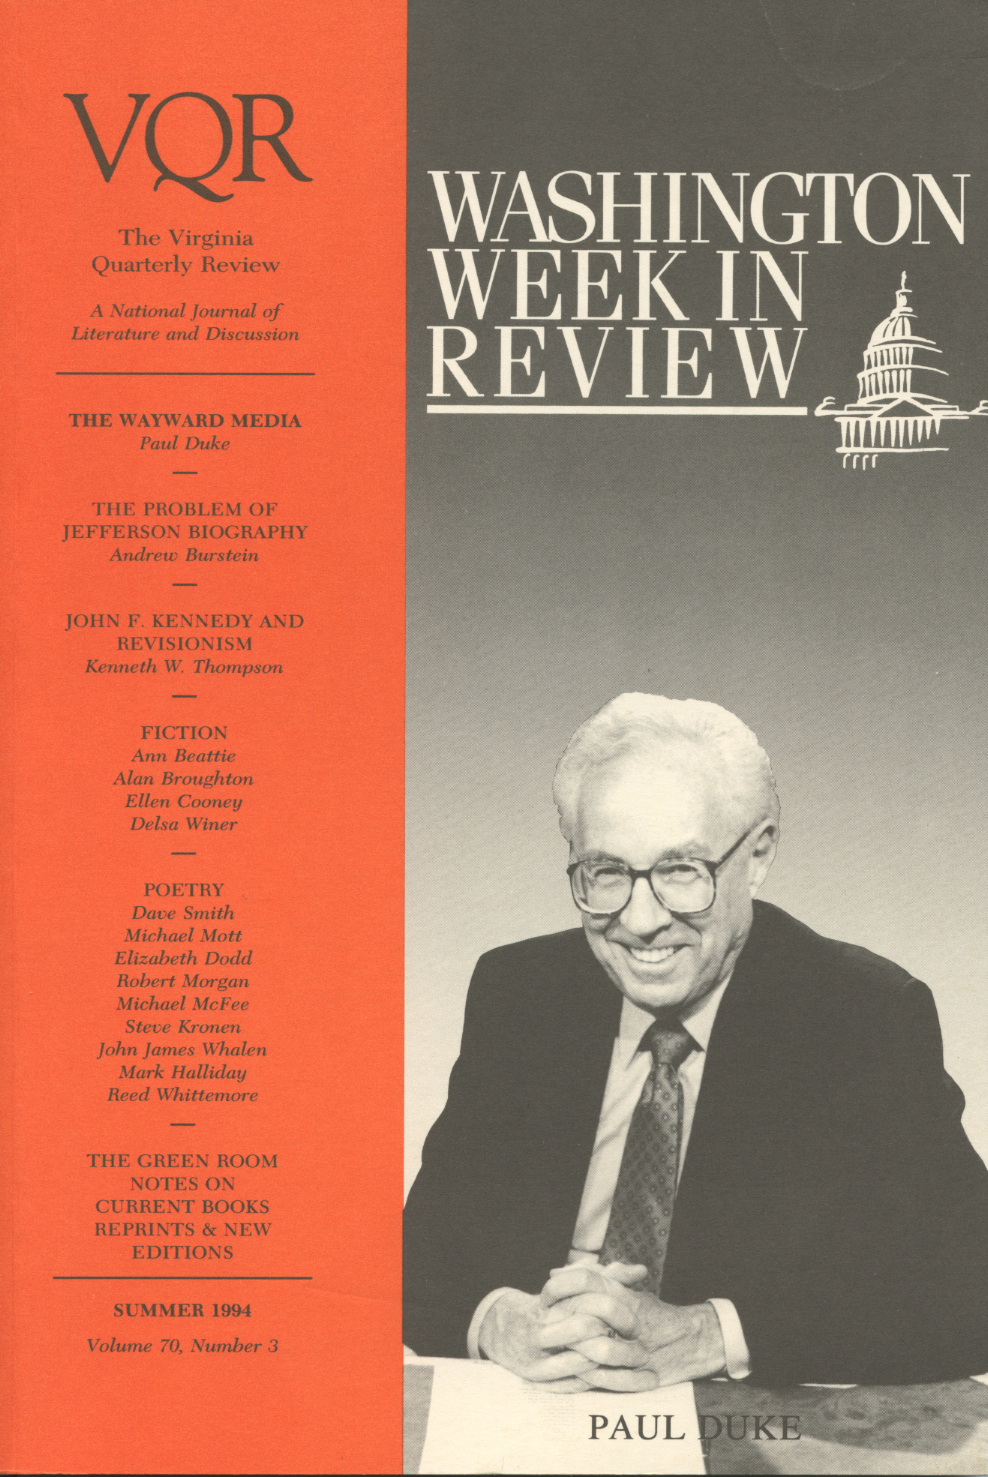 Virginia Quarterly Review, Summer 1994 cover